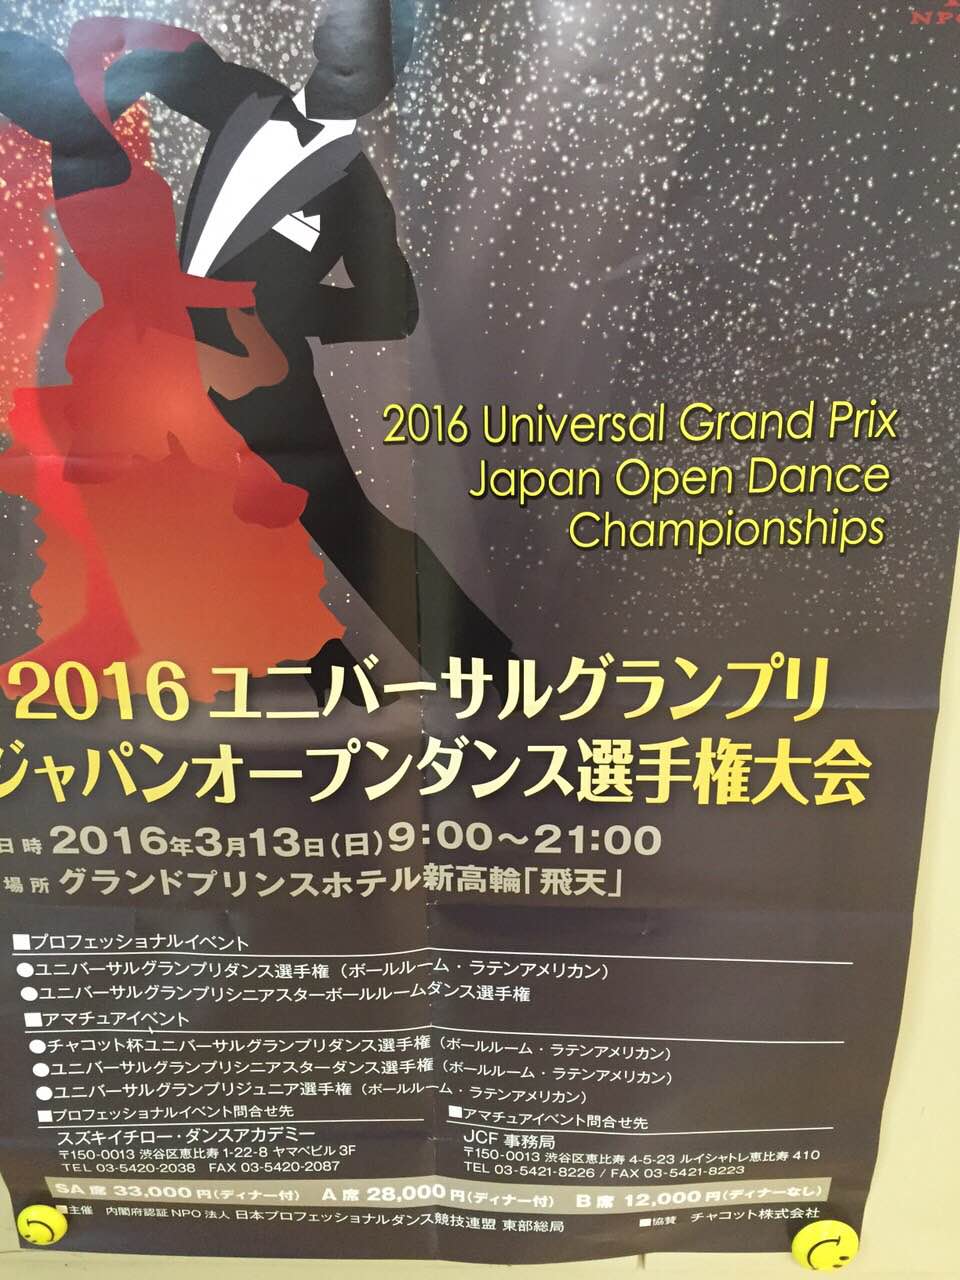 ユニバーサルグランプリジャパンオープンダンス選手権大会